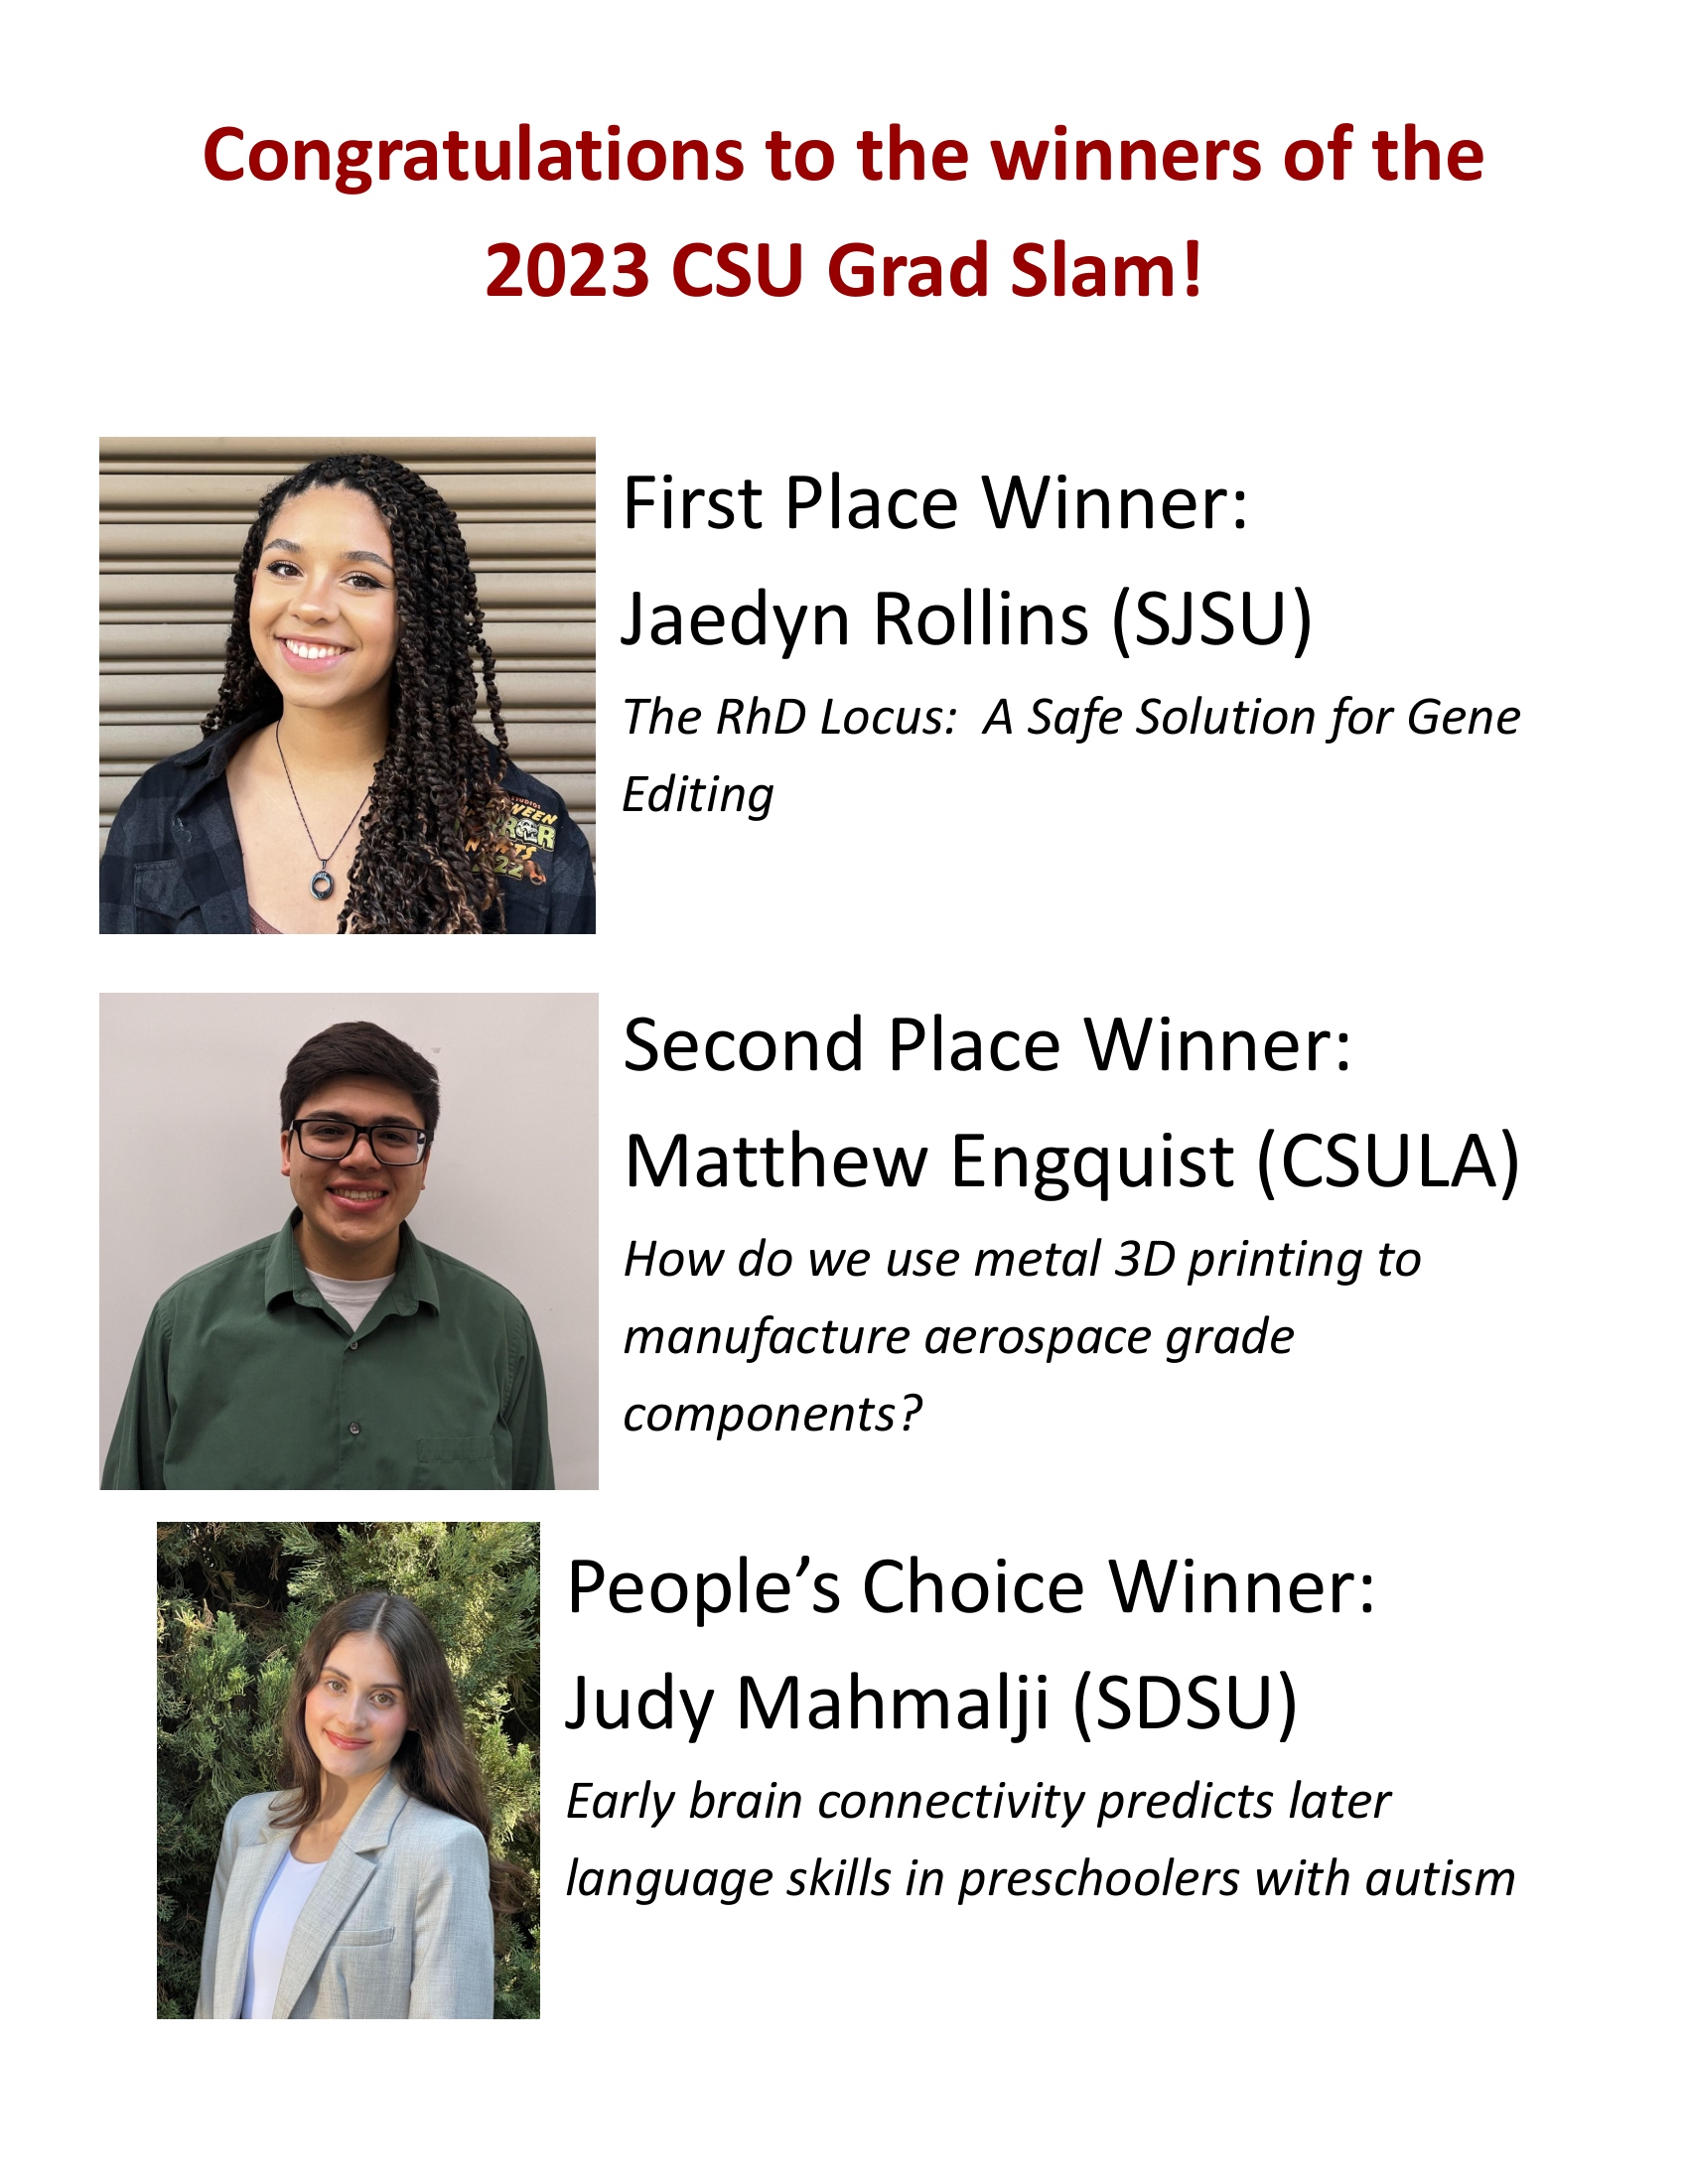 2023 CSU Grad Slam Winners